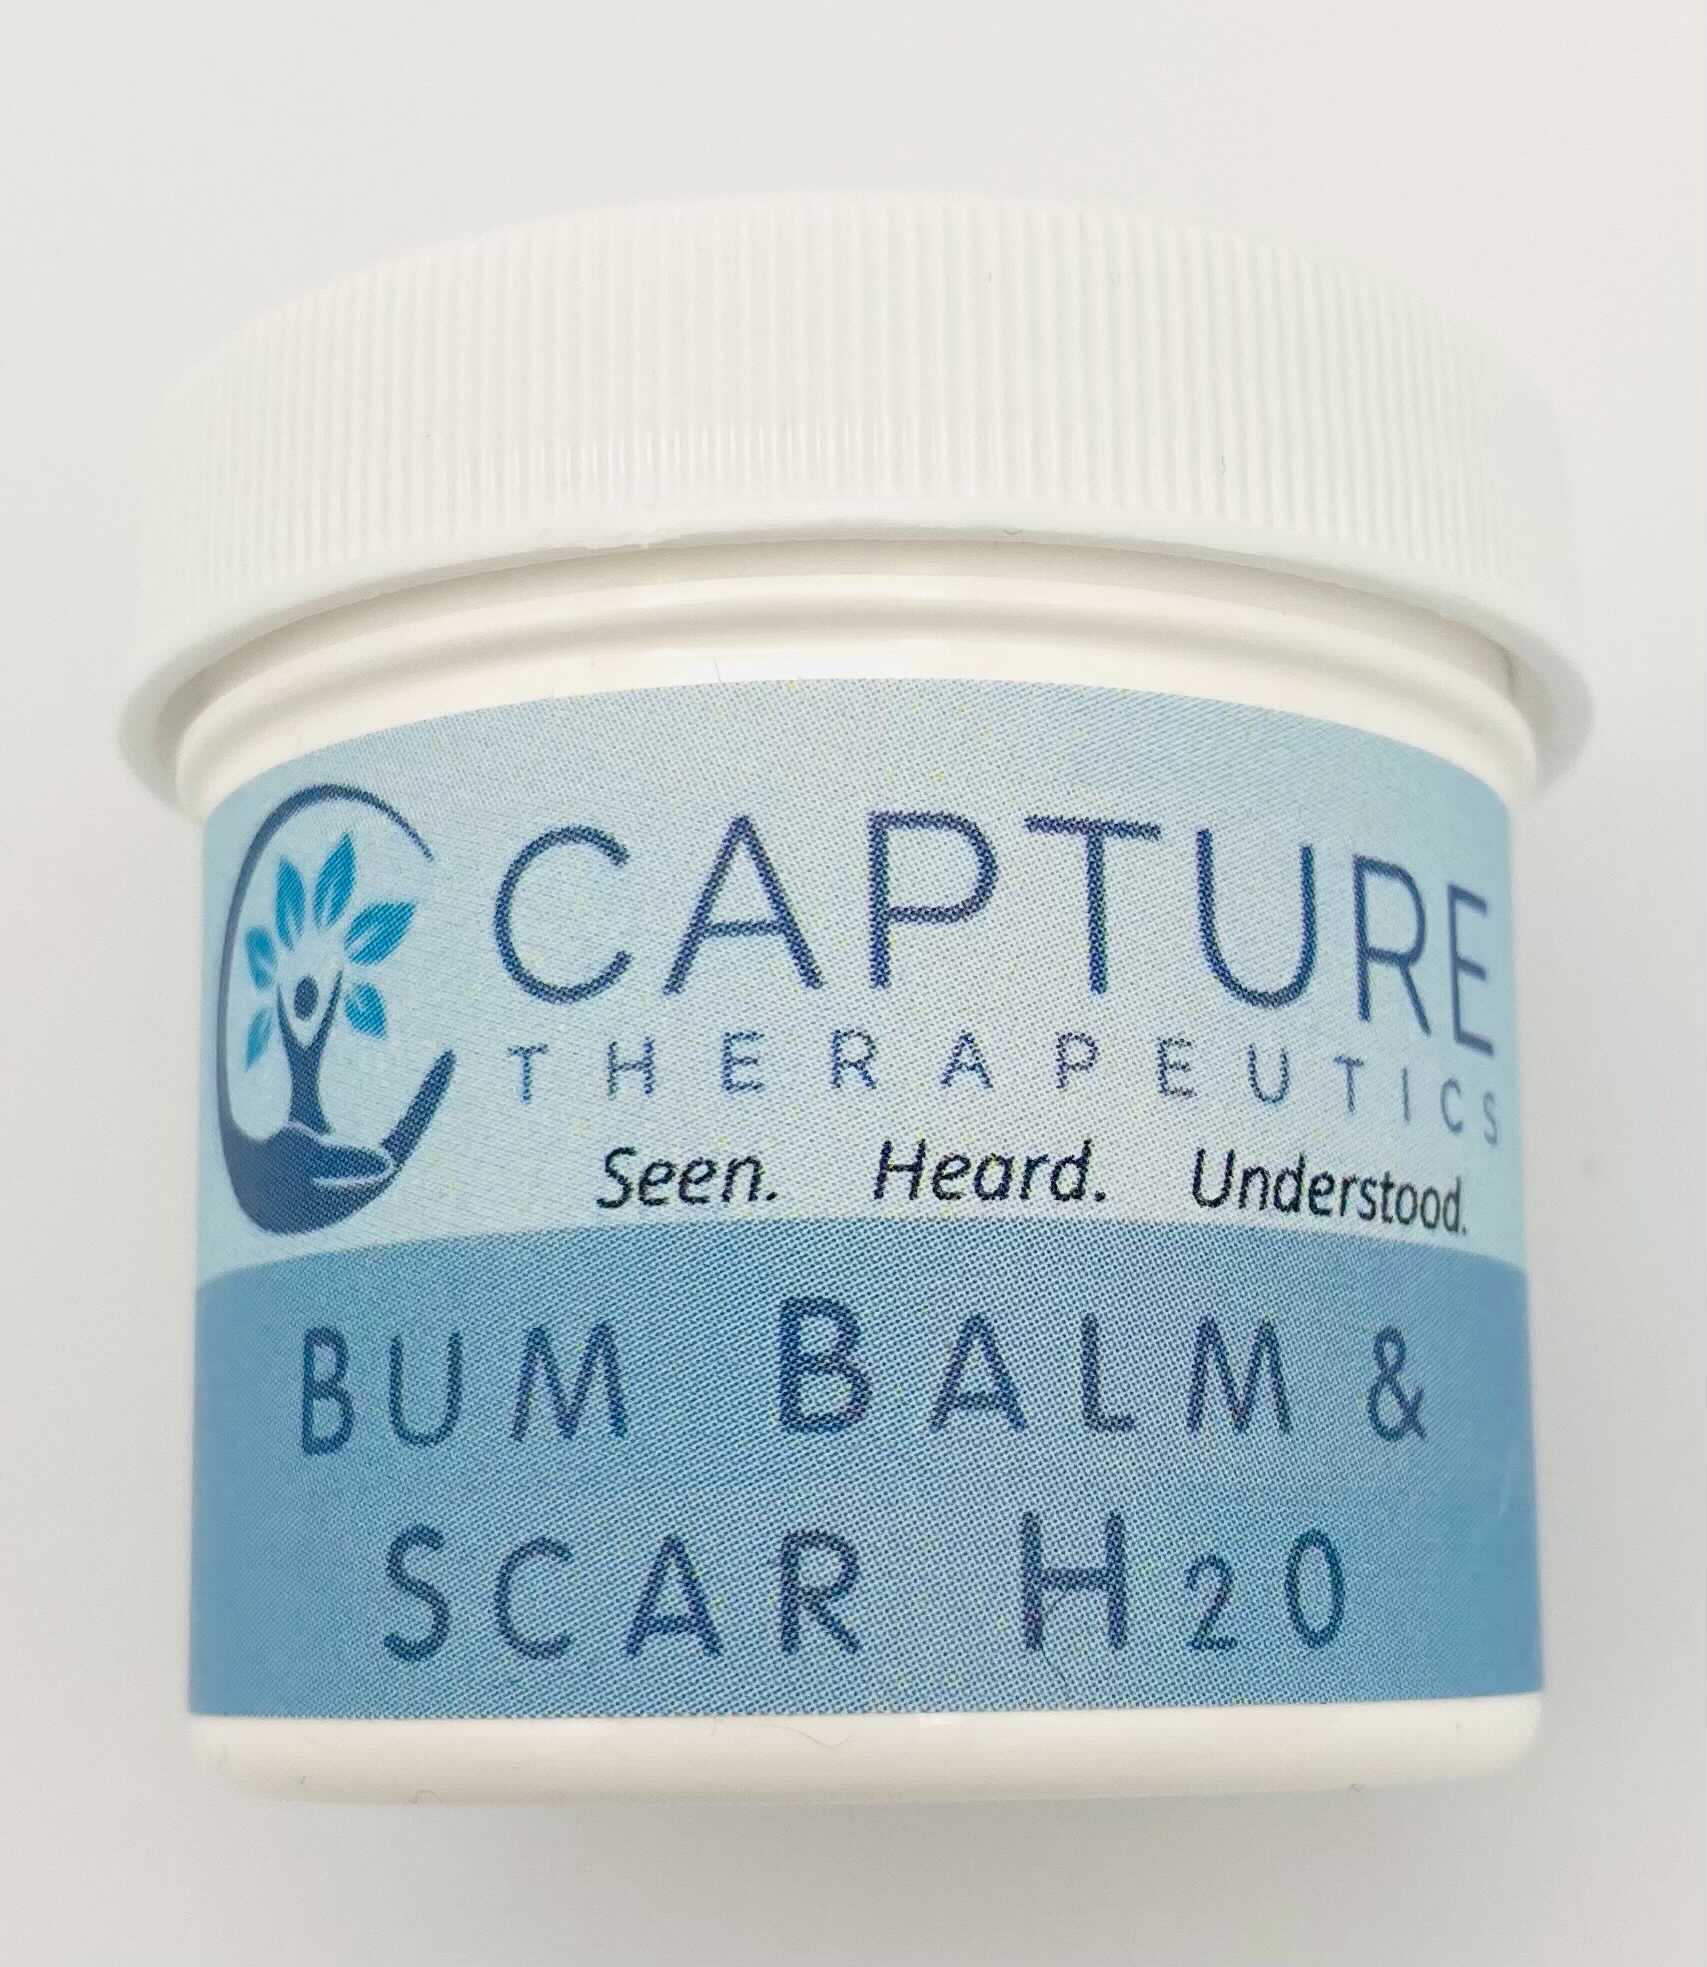 Bum Balm & Scar H2O